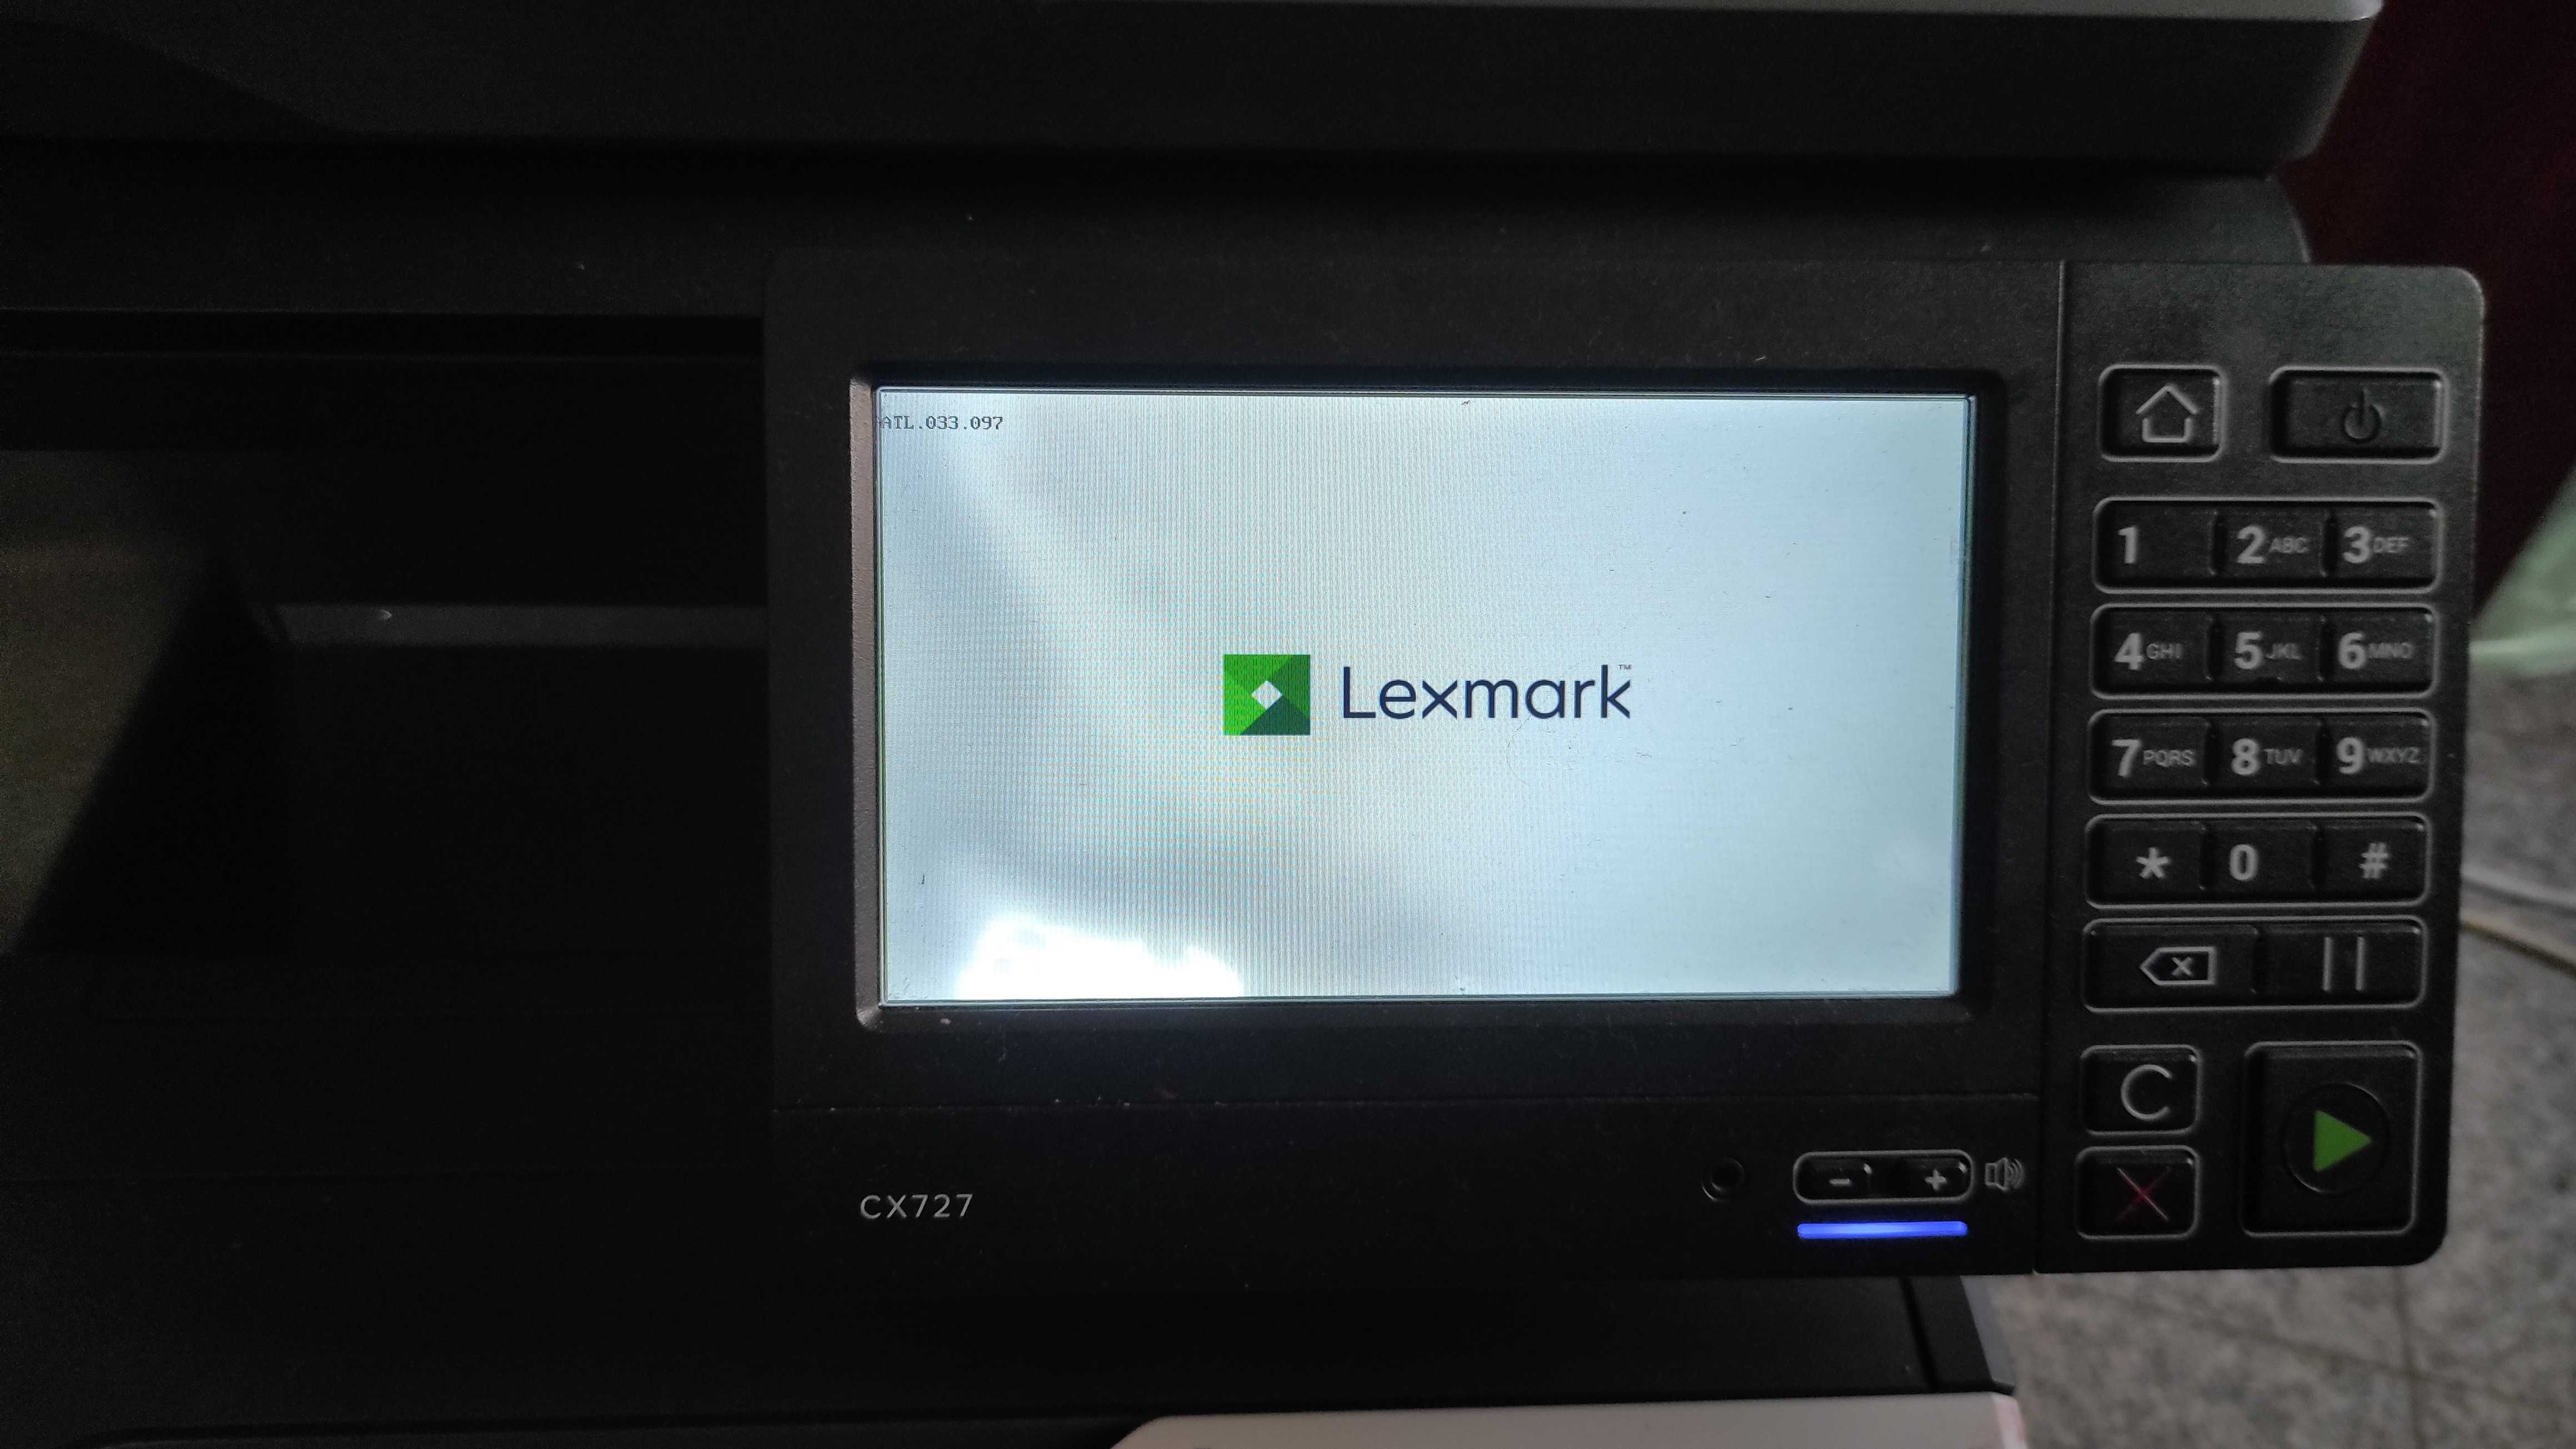 Vand imprimanta laser color Lexmark cx727